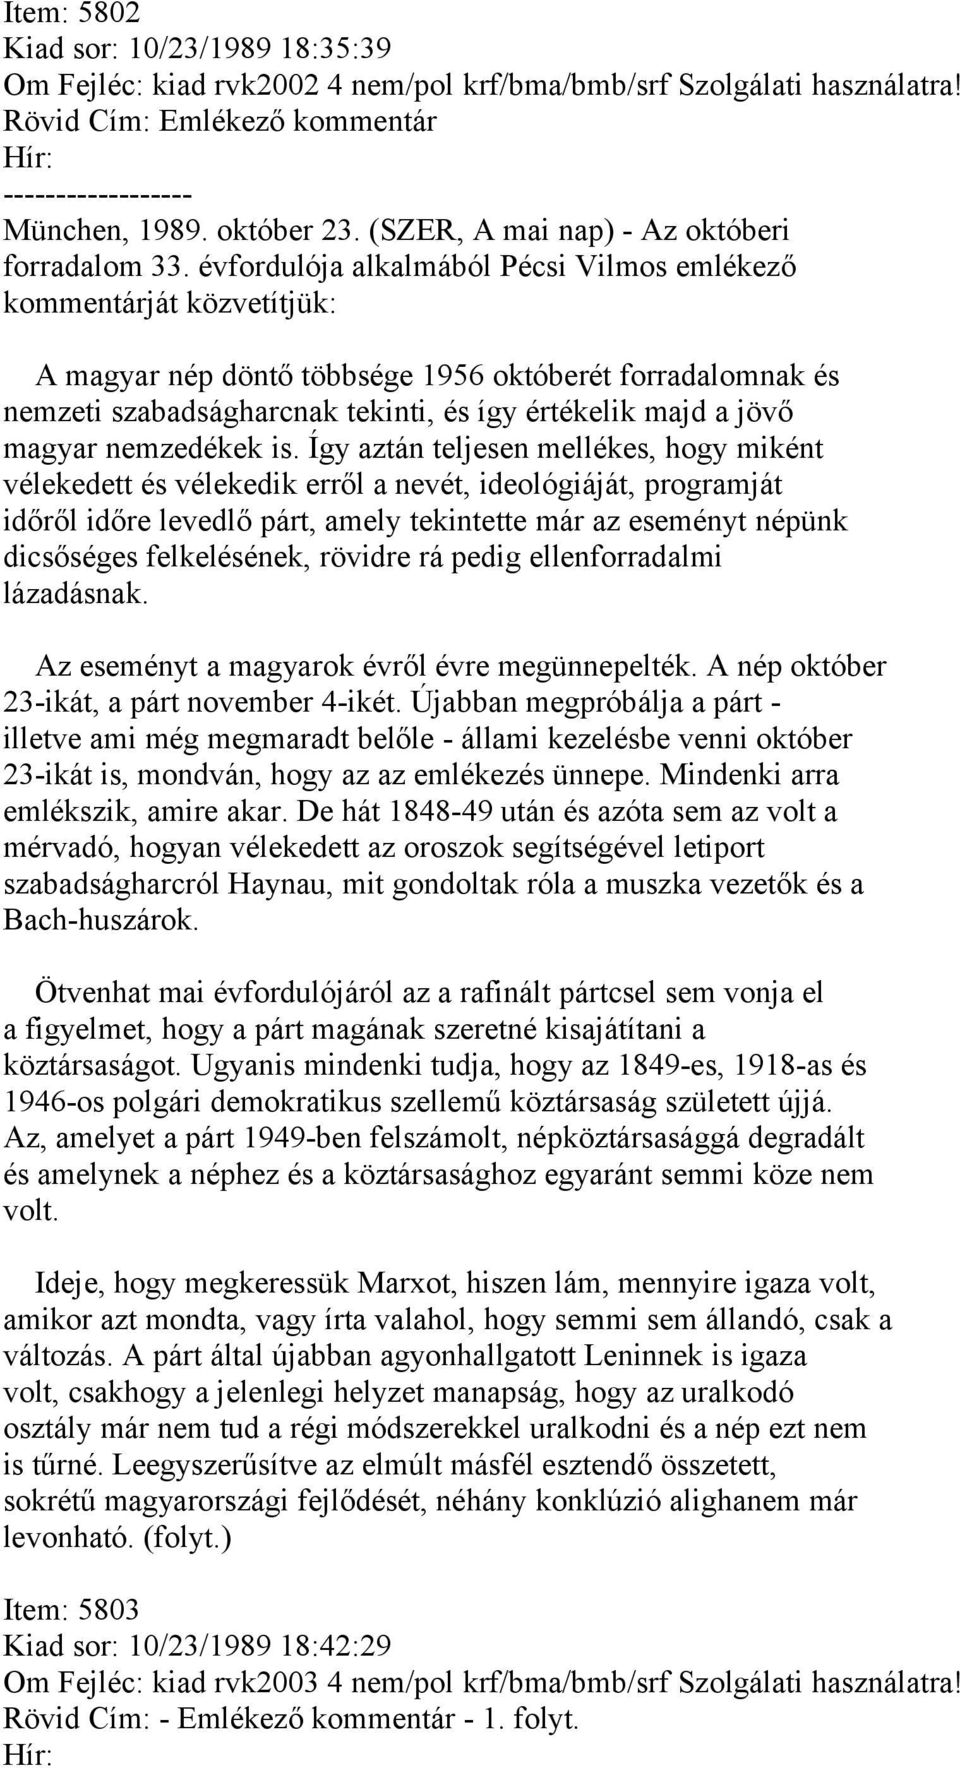 évfordulója alkalmából Pécsi Vilmos emlékező kommentárját közvetítjük: A magyar nép döntő többsége 1956 októberét forradalomnak és nemzeti szabadságharcnak tekinti, és így értékelik majd a jövő